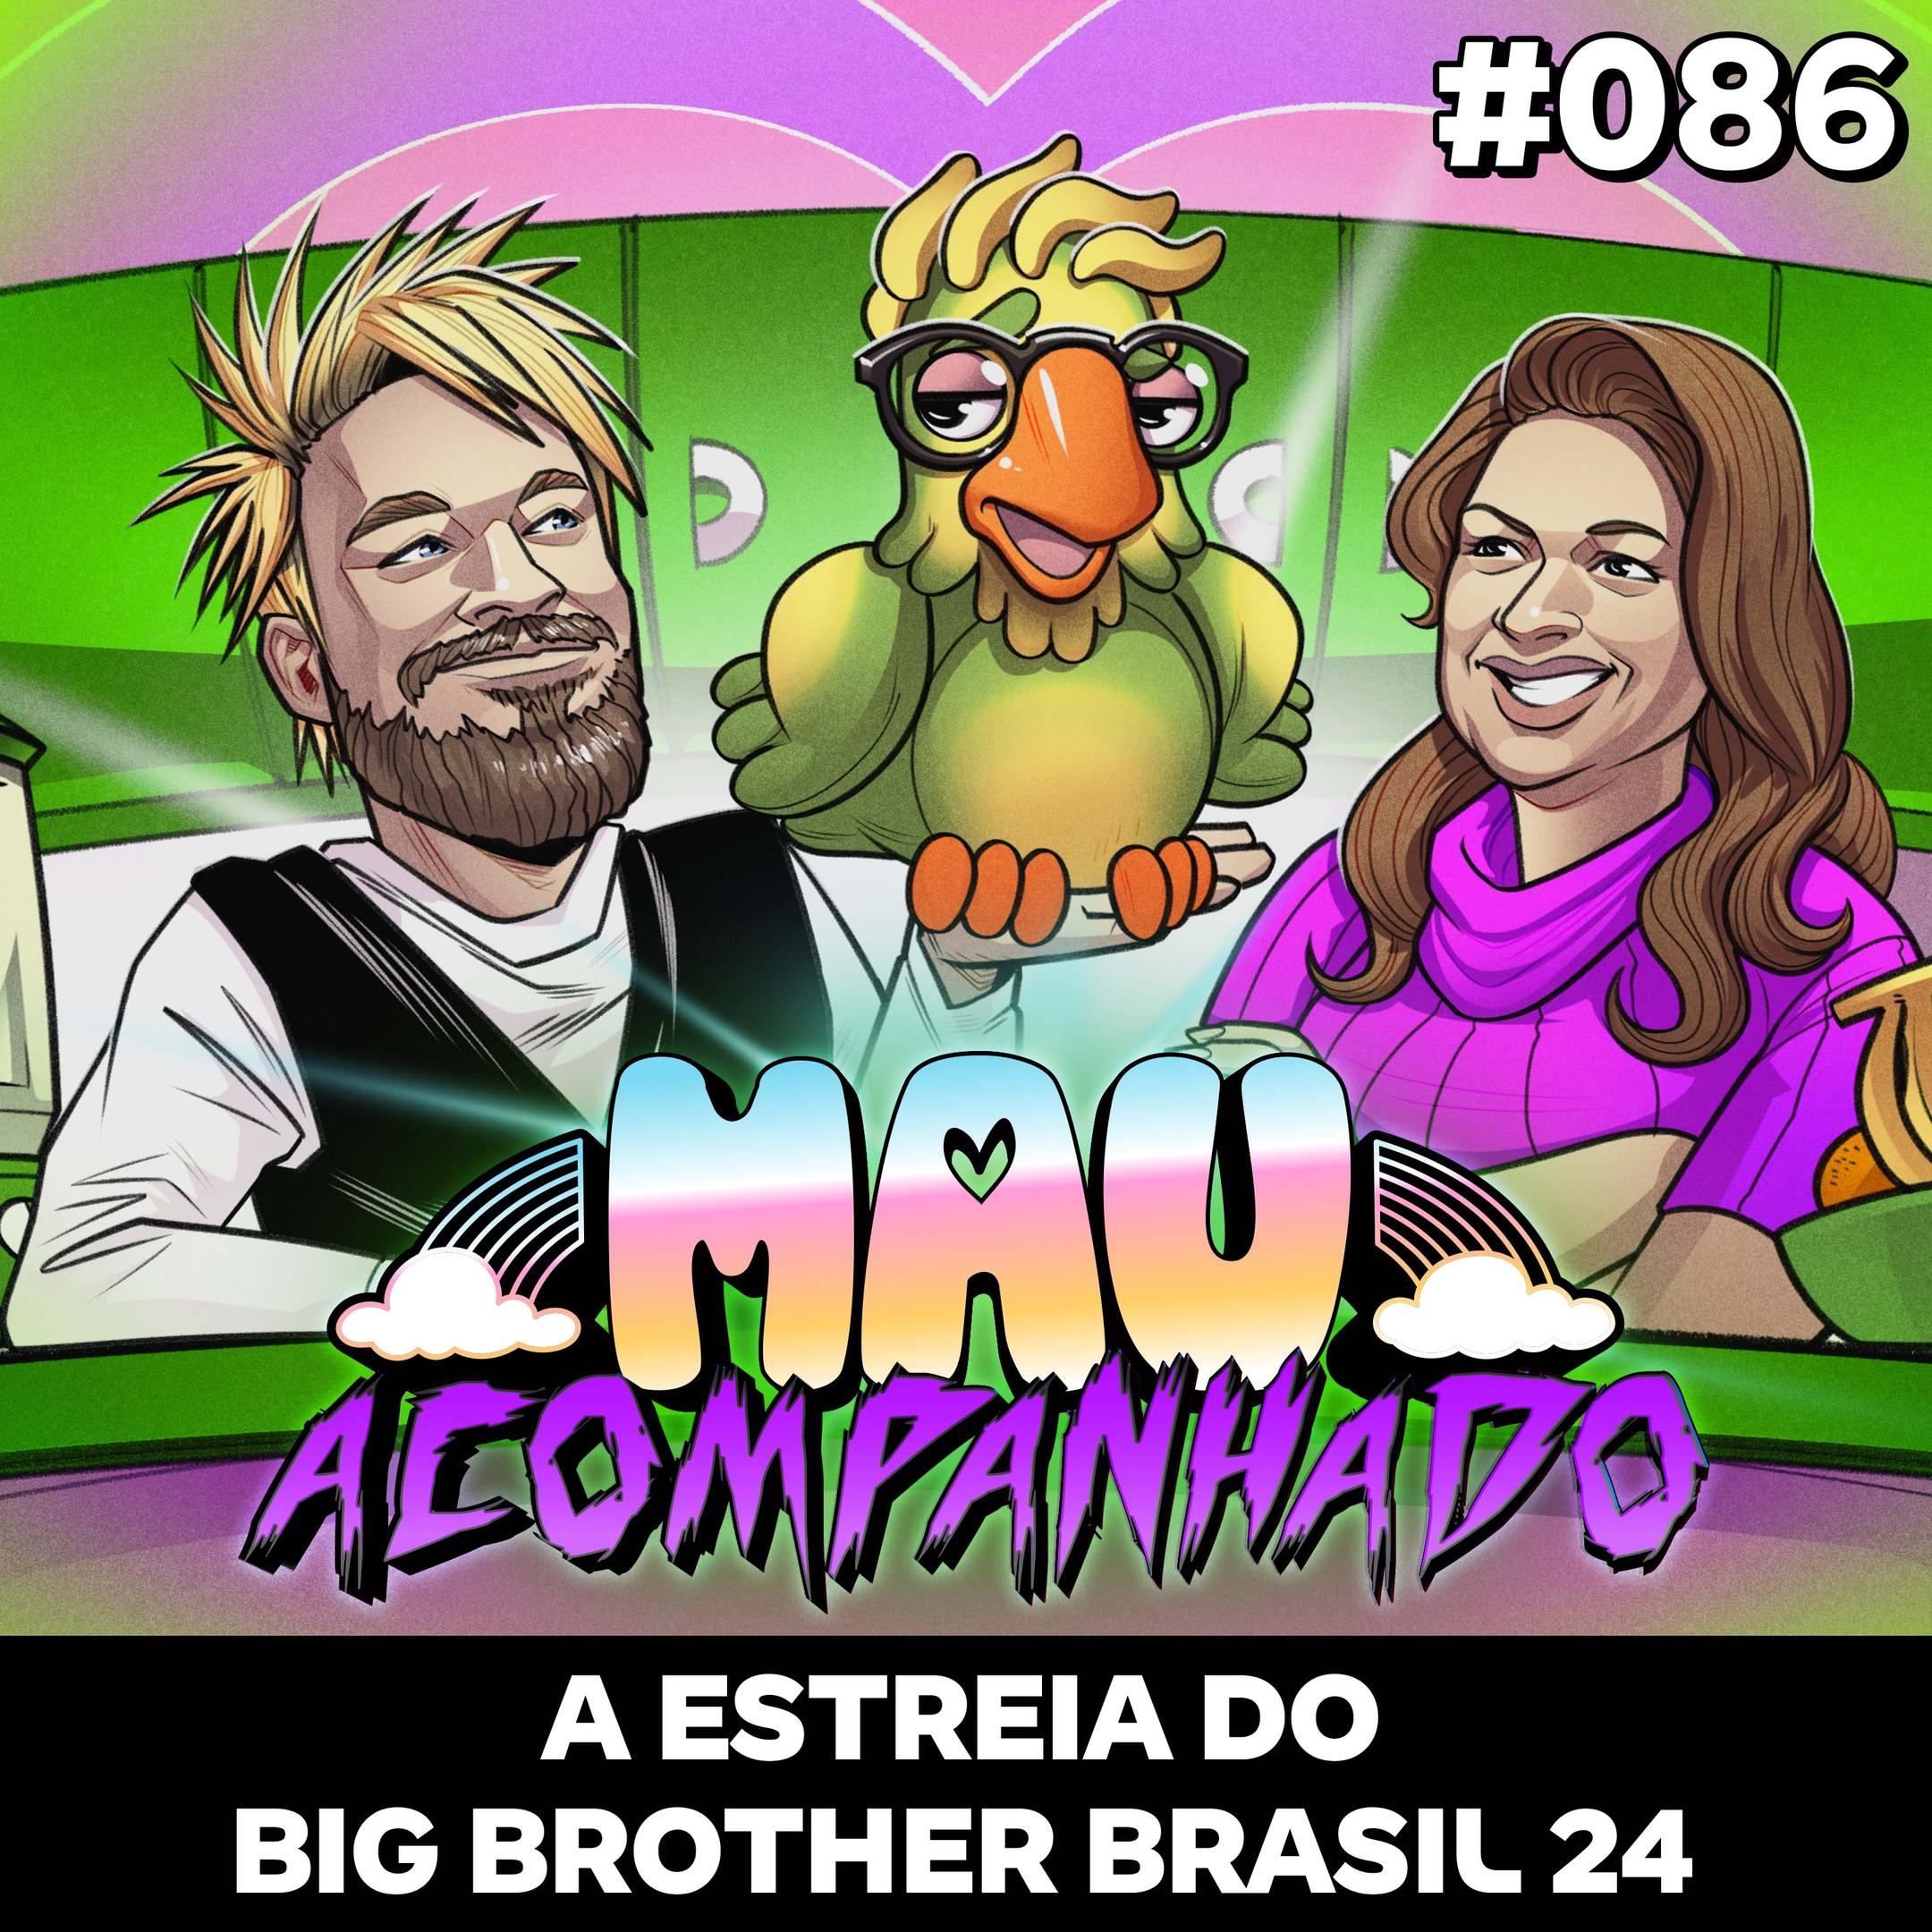 A Estreia do Big Brother Brasil 24